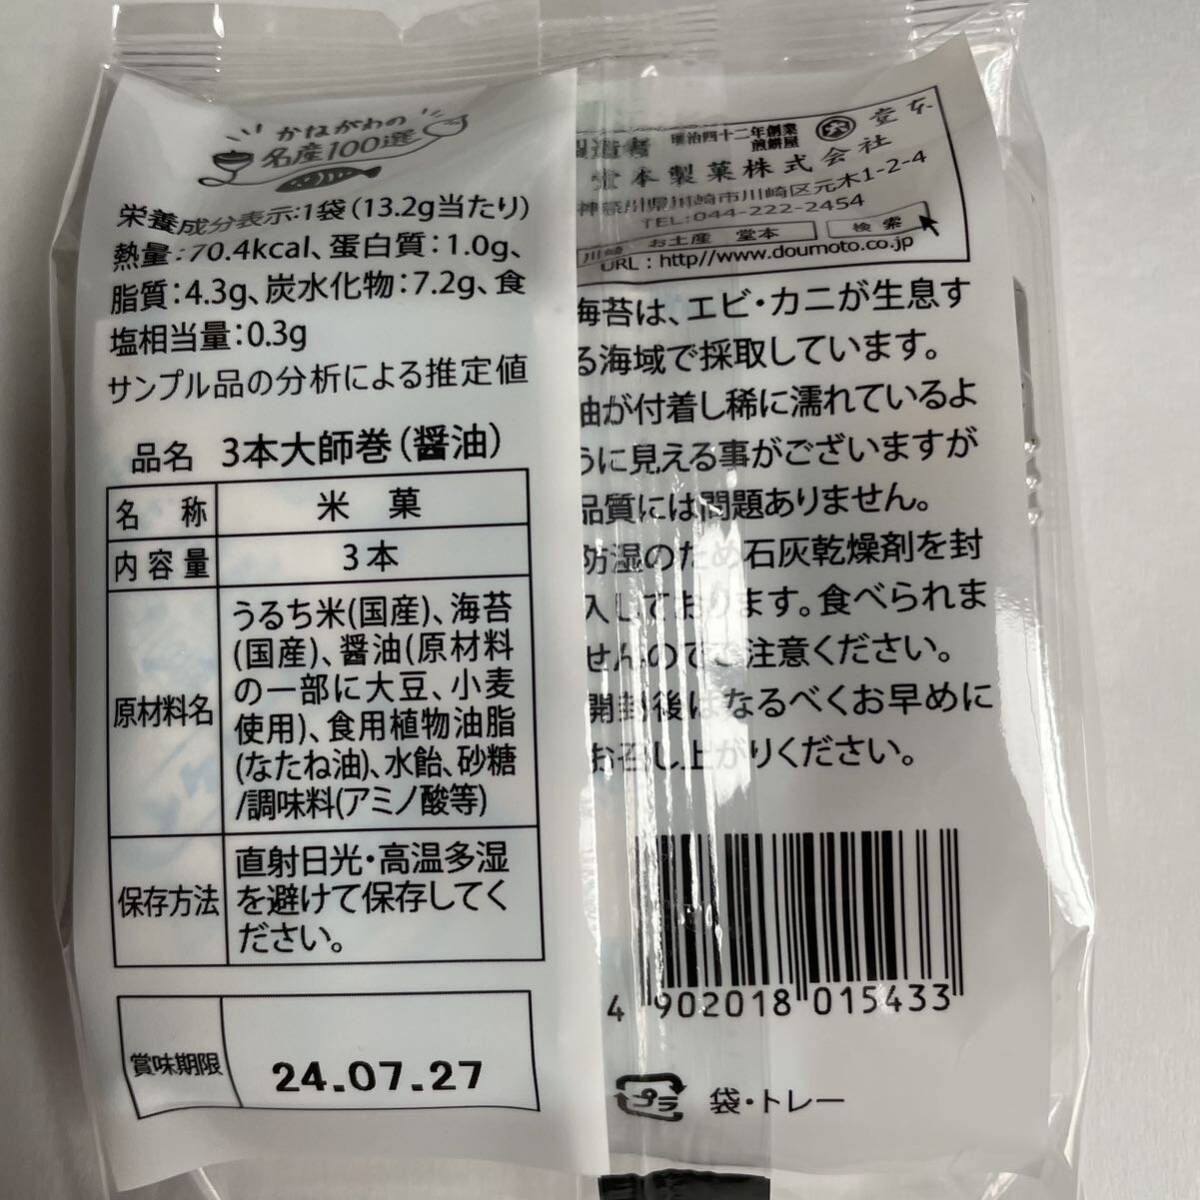 【送料無料】川崎名産 堂本製菓 大師巻 3本入 醤油 10袋